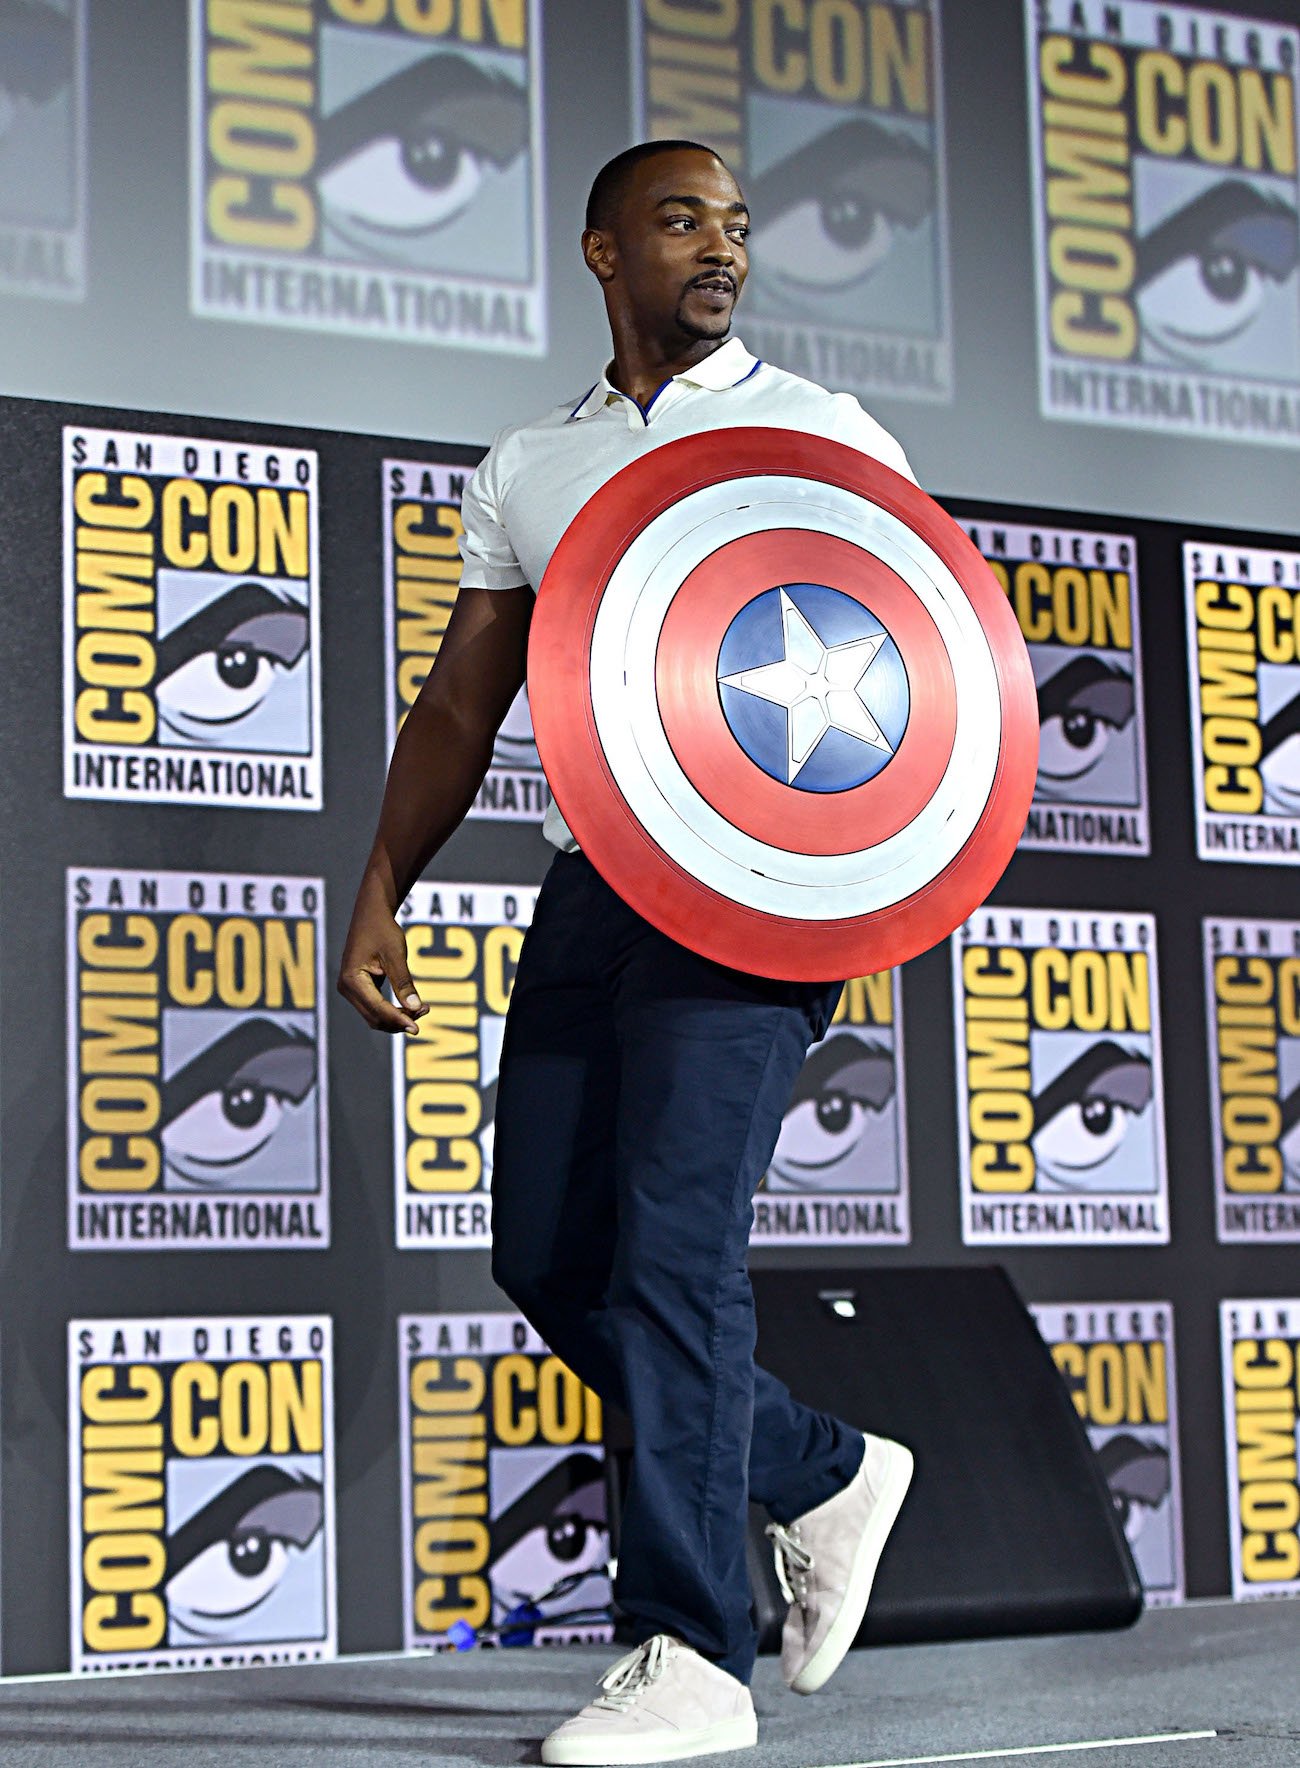 Anthony Mackie MCU of Avengers: Endgame